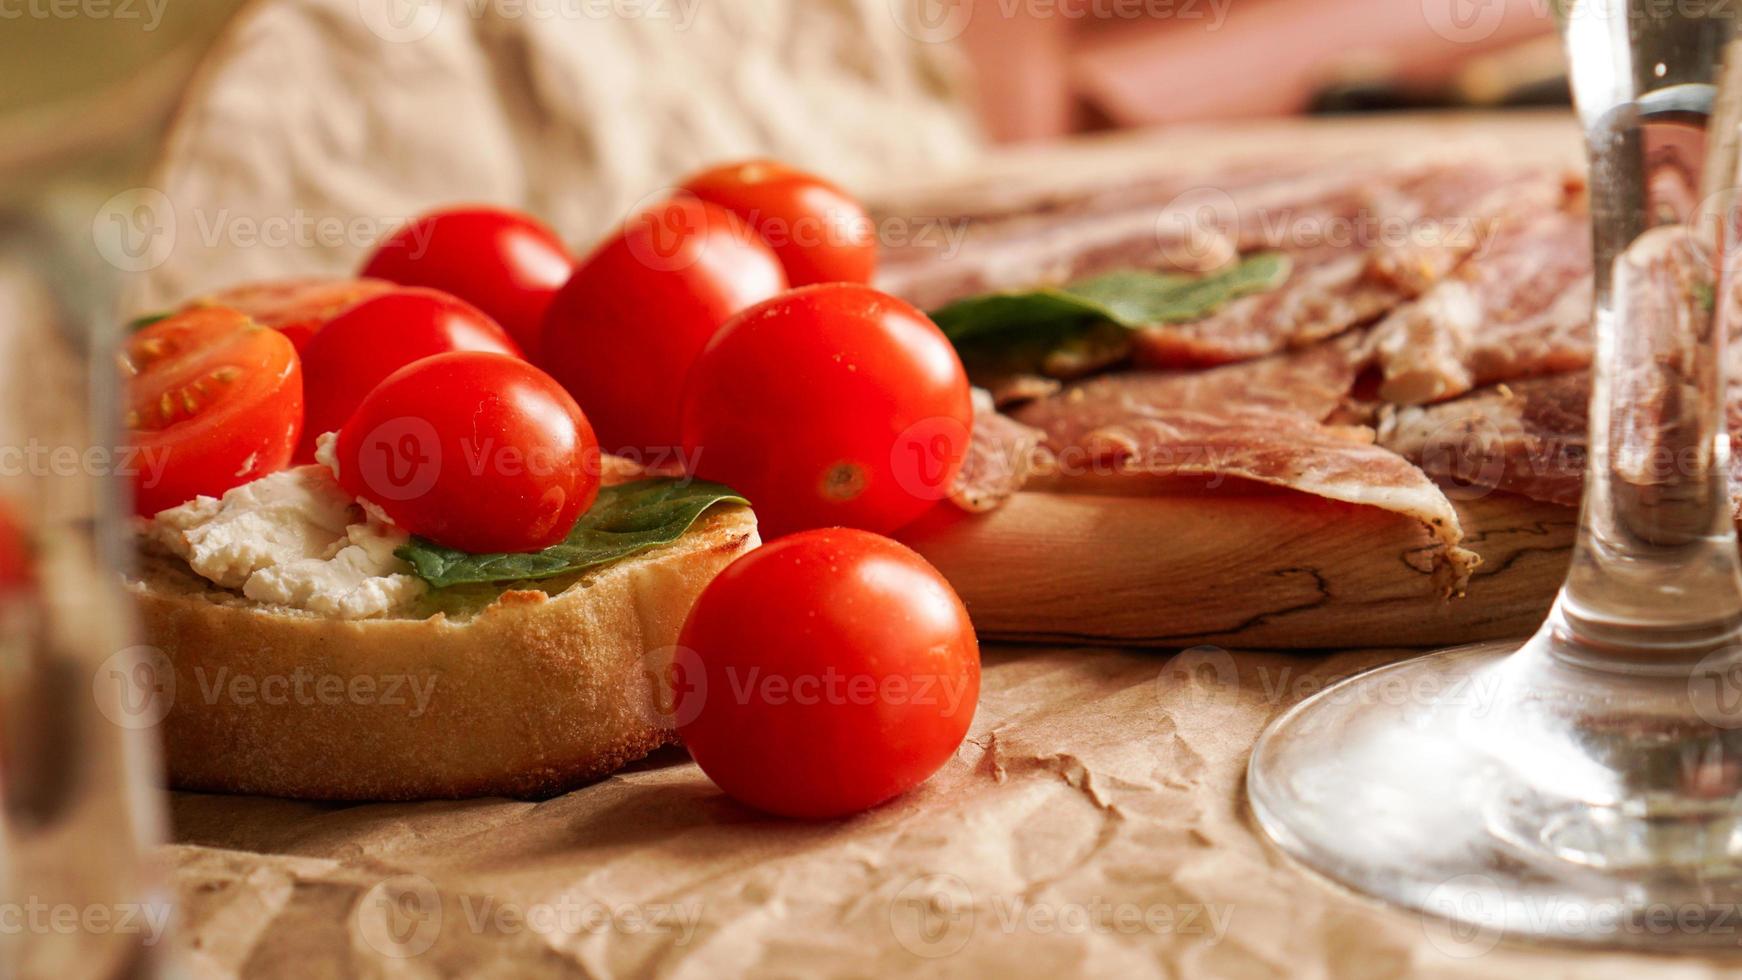 bruschetta com tomate cereja. copo de vinho, aperitivo italiano. foto